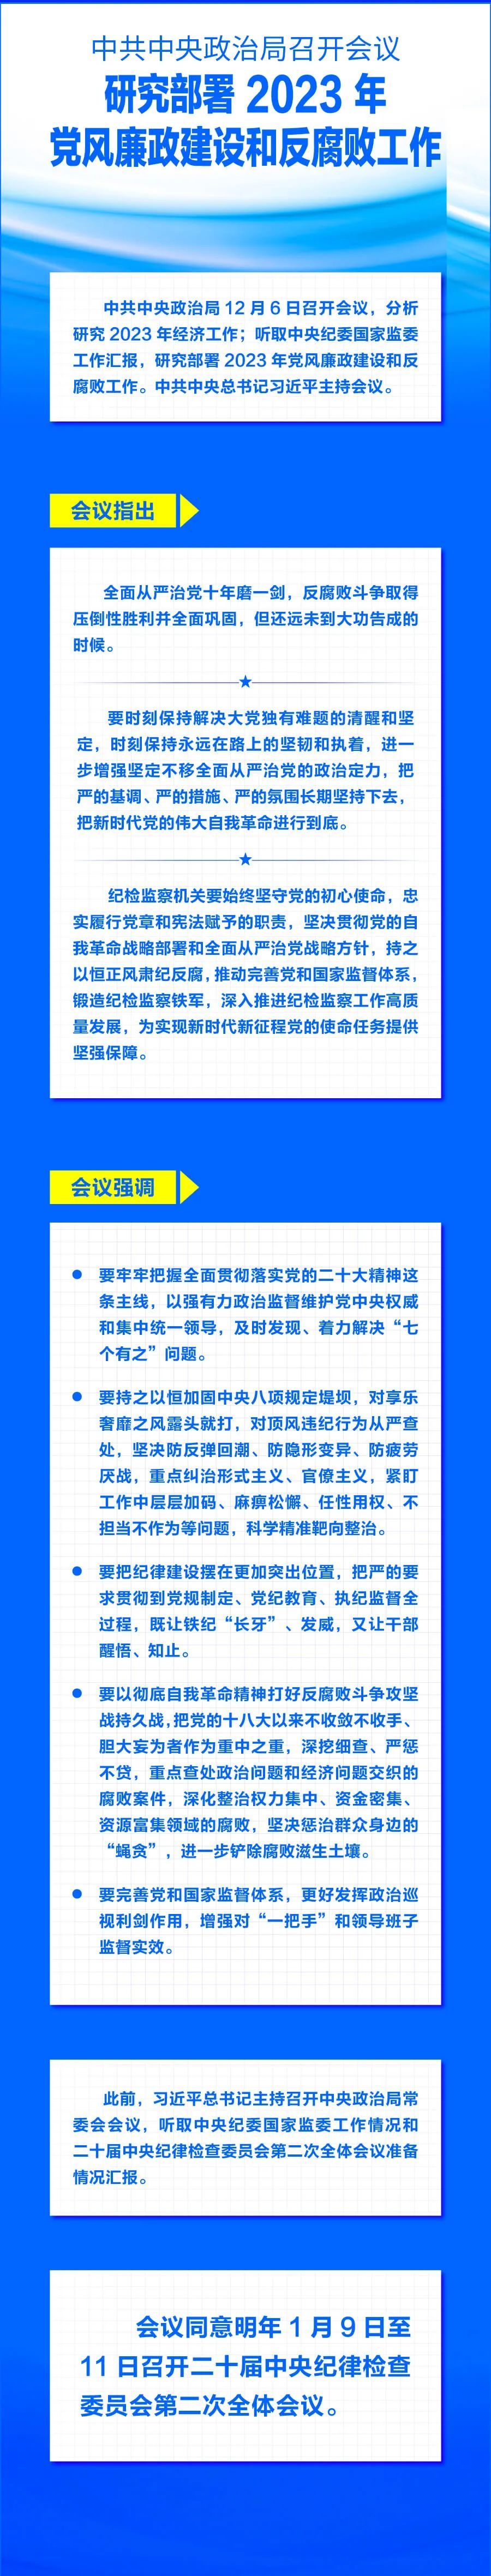 中共中央政治局召开会议 研究部署2023年党风廉政建设和反腐败工作